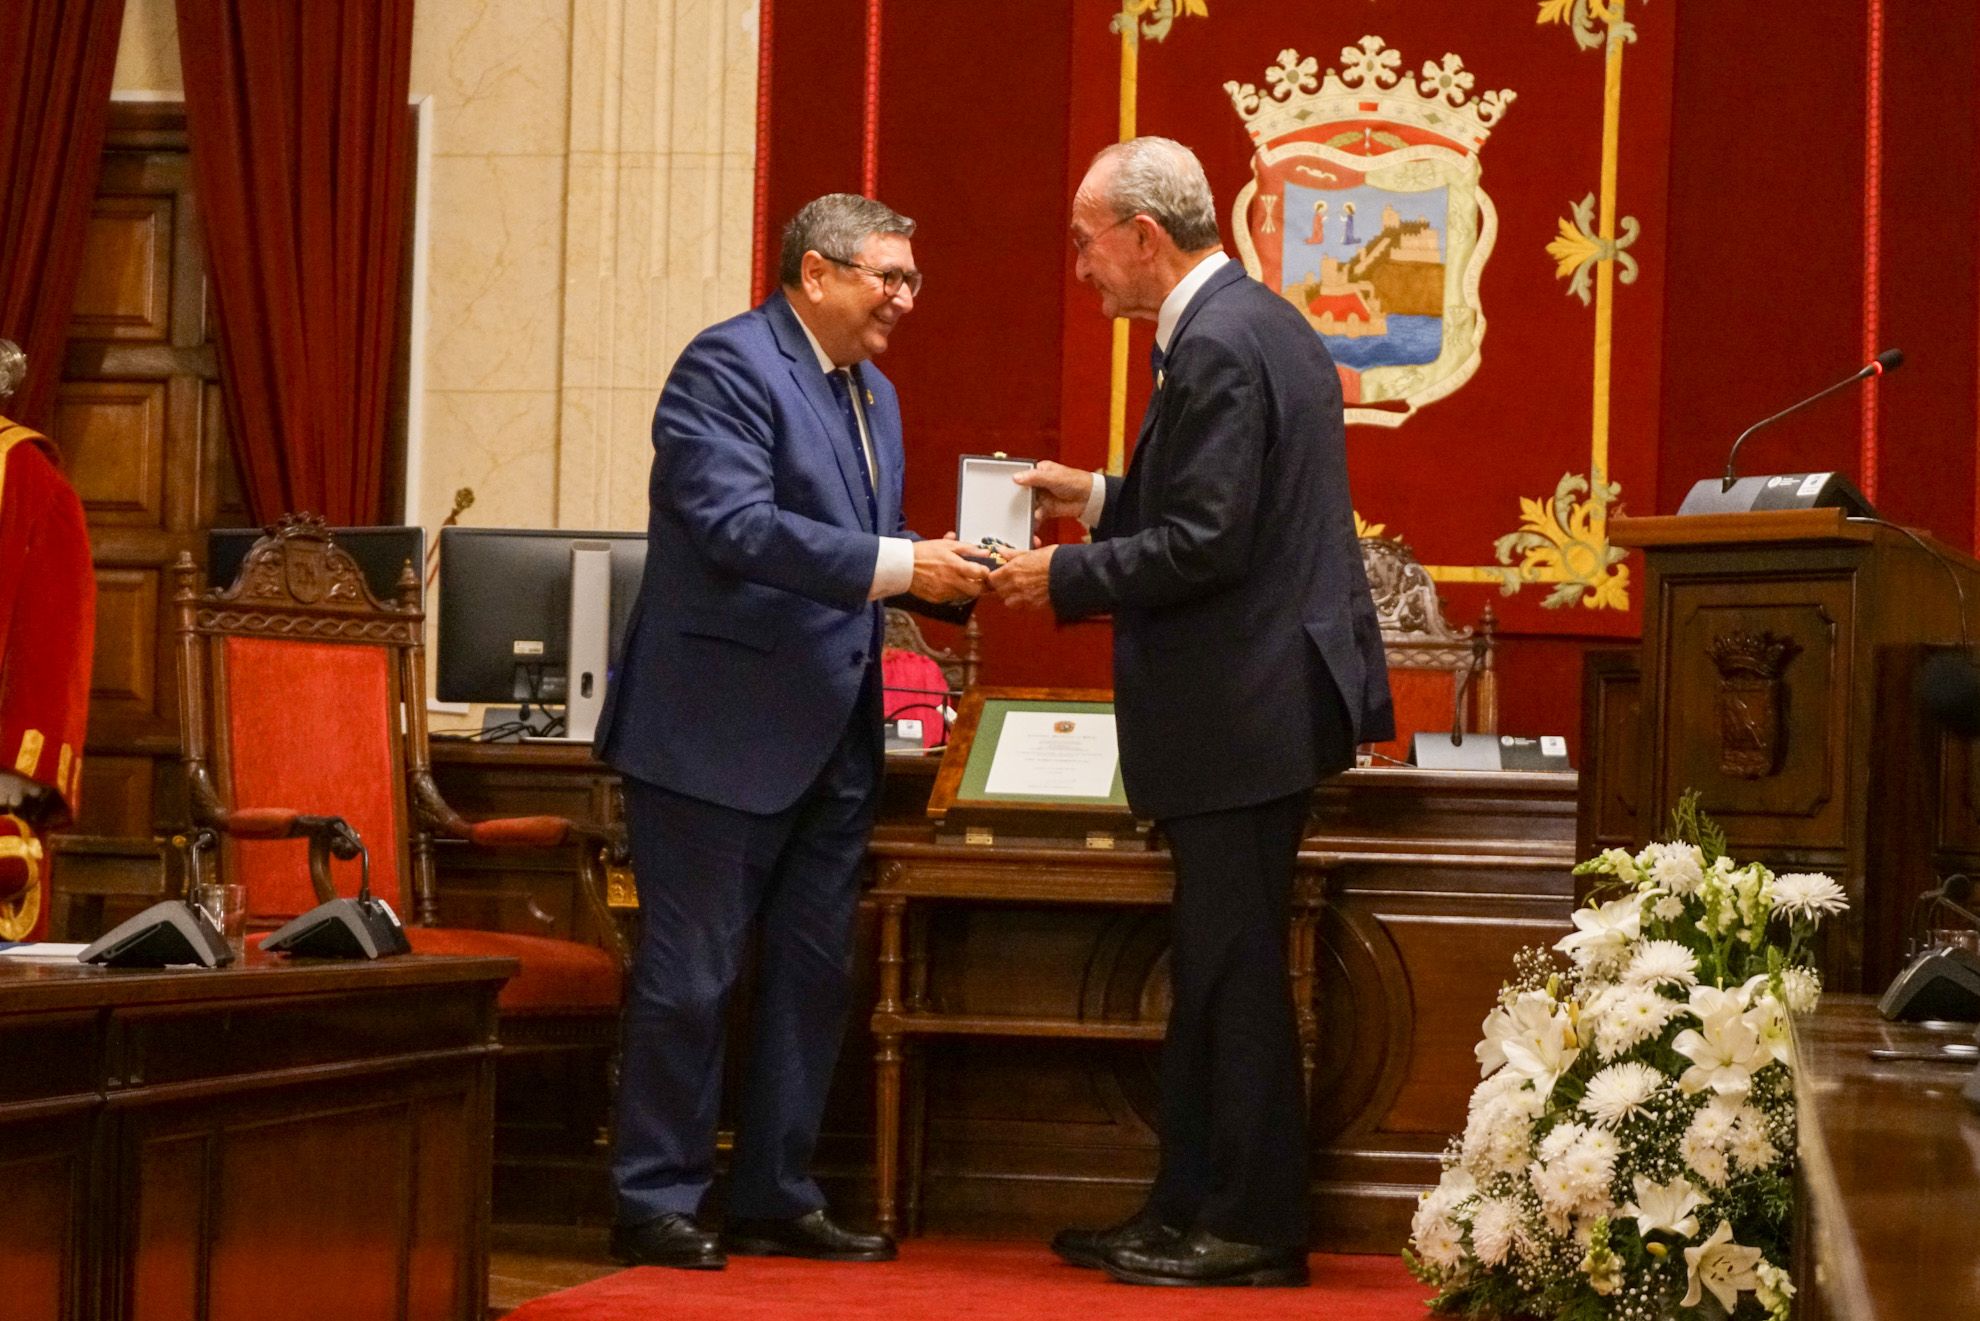 Acto de entrega de la medalla de la ciudad y del título de Hija Adoptiva de Málaga a título póstumo a María Zambrano